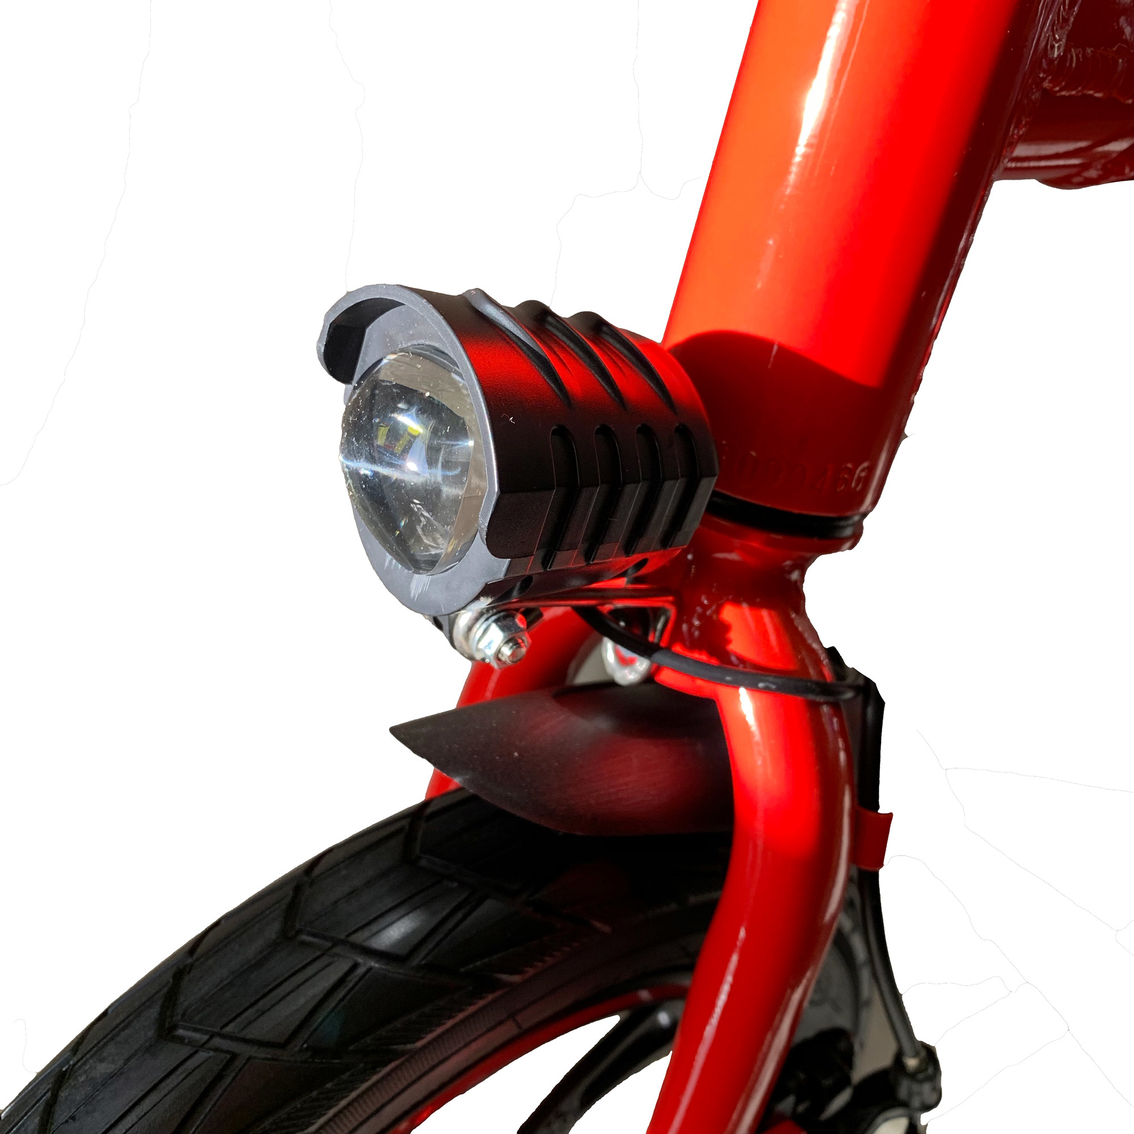 GlareWheel Urban Fashion Foldable Electric Bike - Image 4 of 5